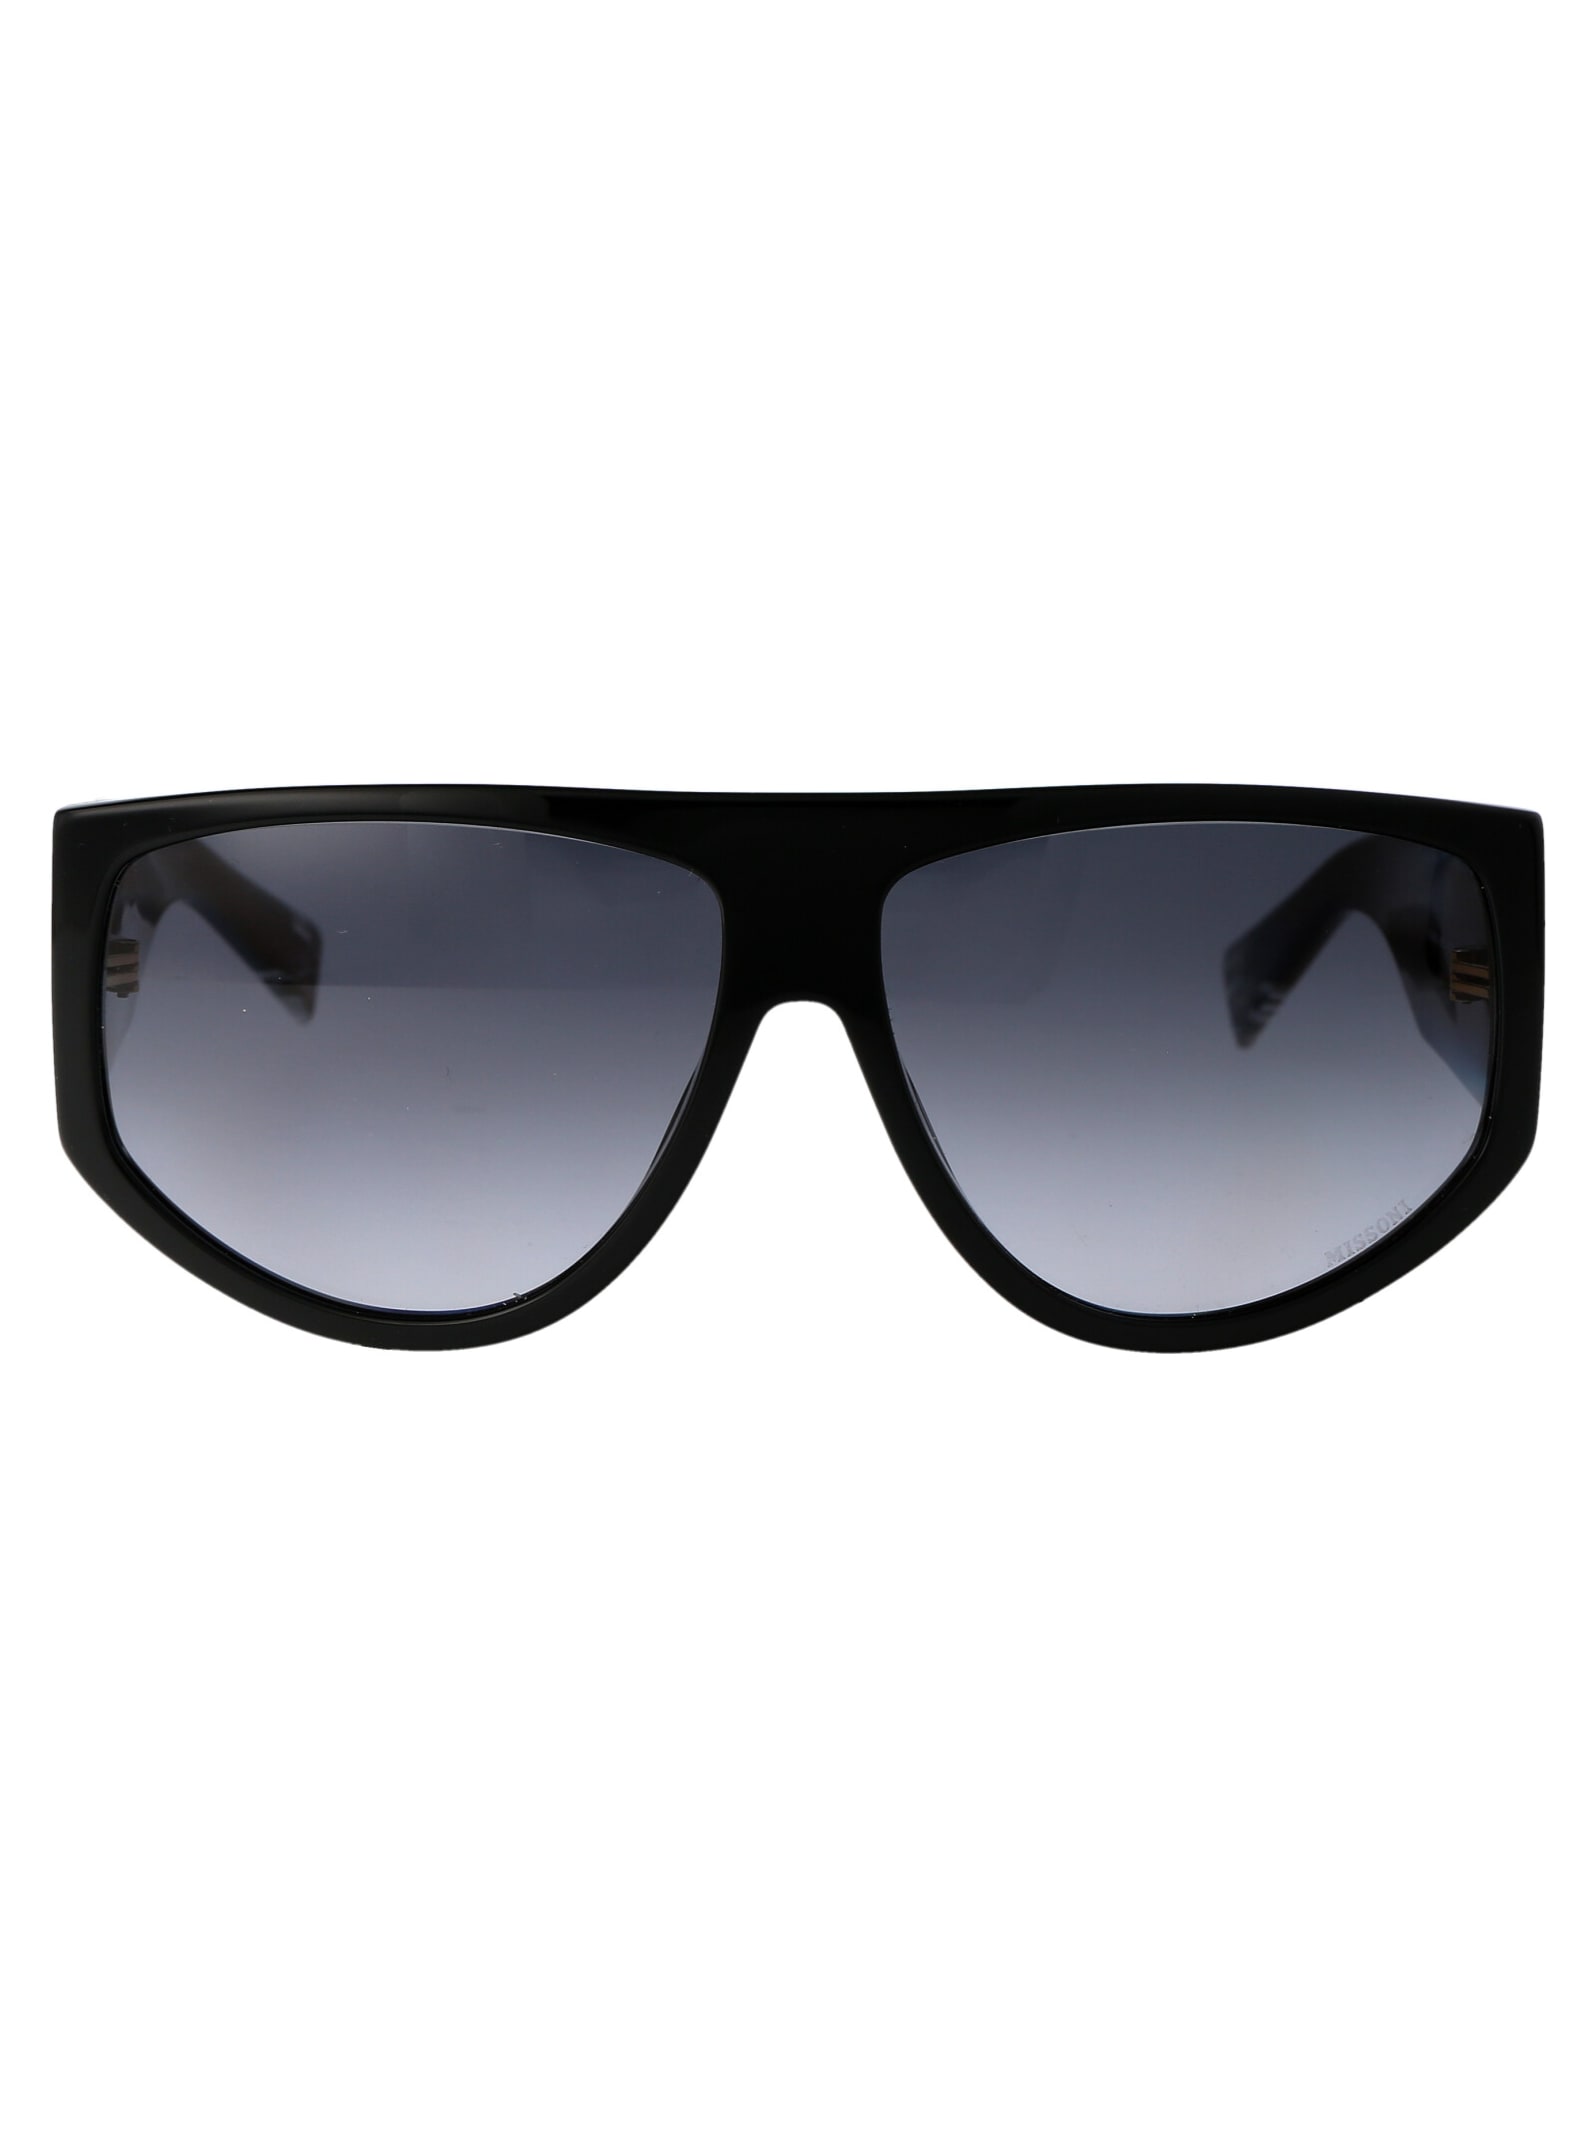 Mis 0165/s Sunglasses